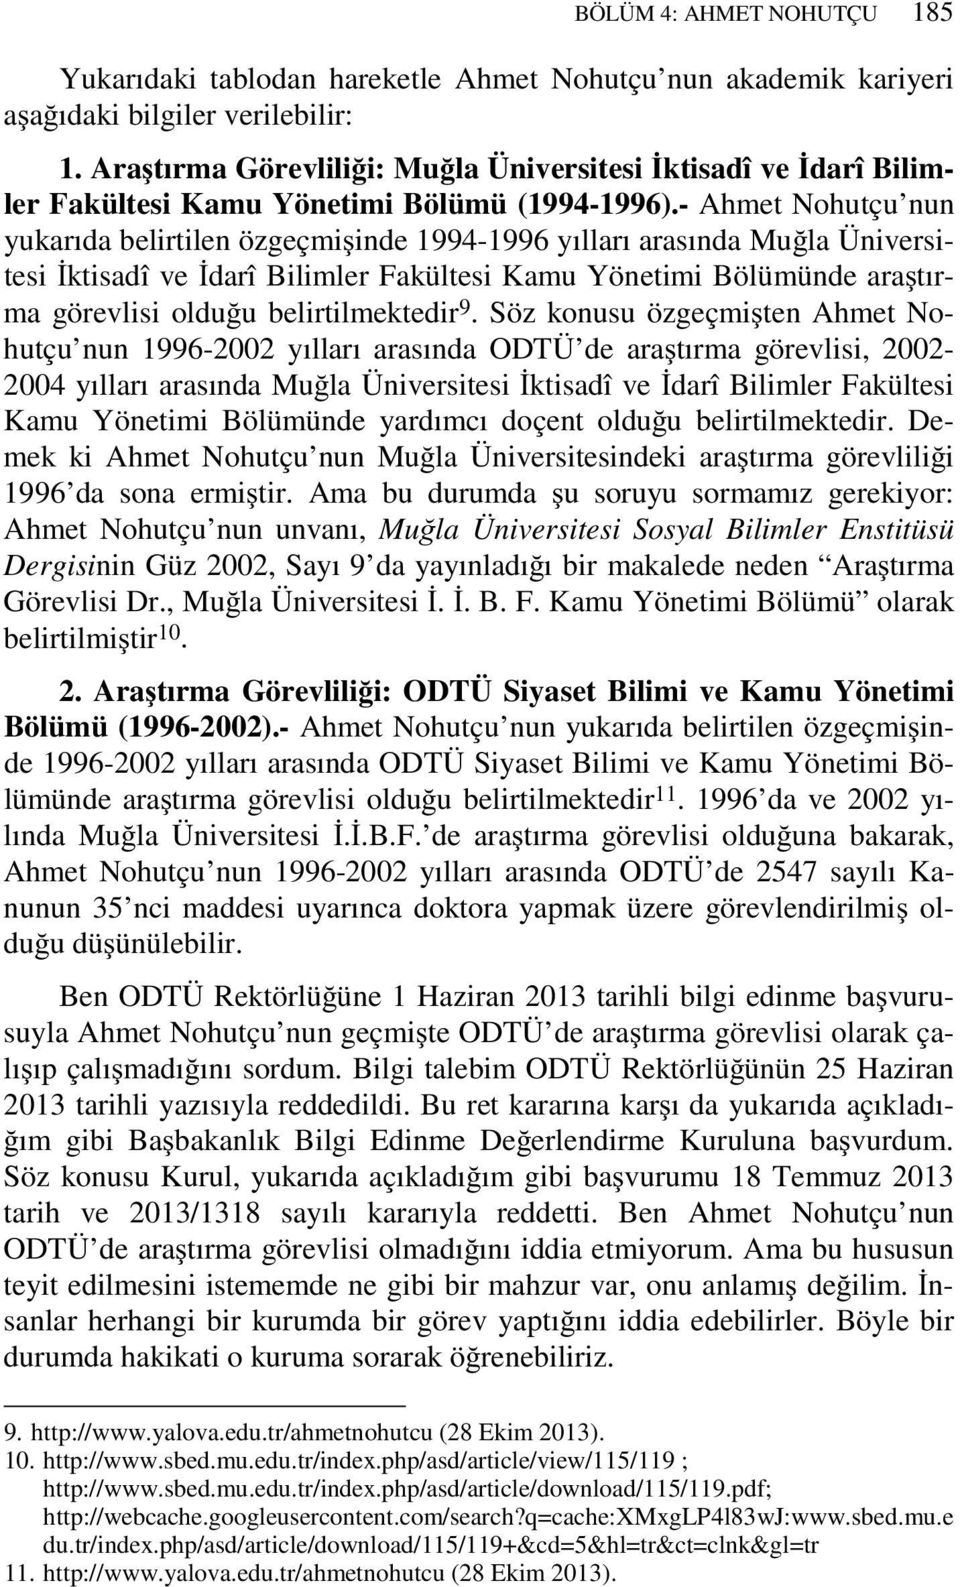 - Ahmet Nohutçu nun yukarıda belirtilen özgeçmişinde 1994-1996 yılları arasında Muğla Üniversitesi İktisadî ve İdarî Bilimler Fakültesi Kamu Yönetimi Bölümünde araştırma görevlisi olduğu